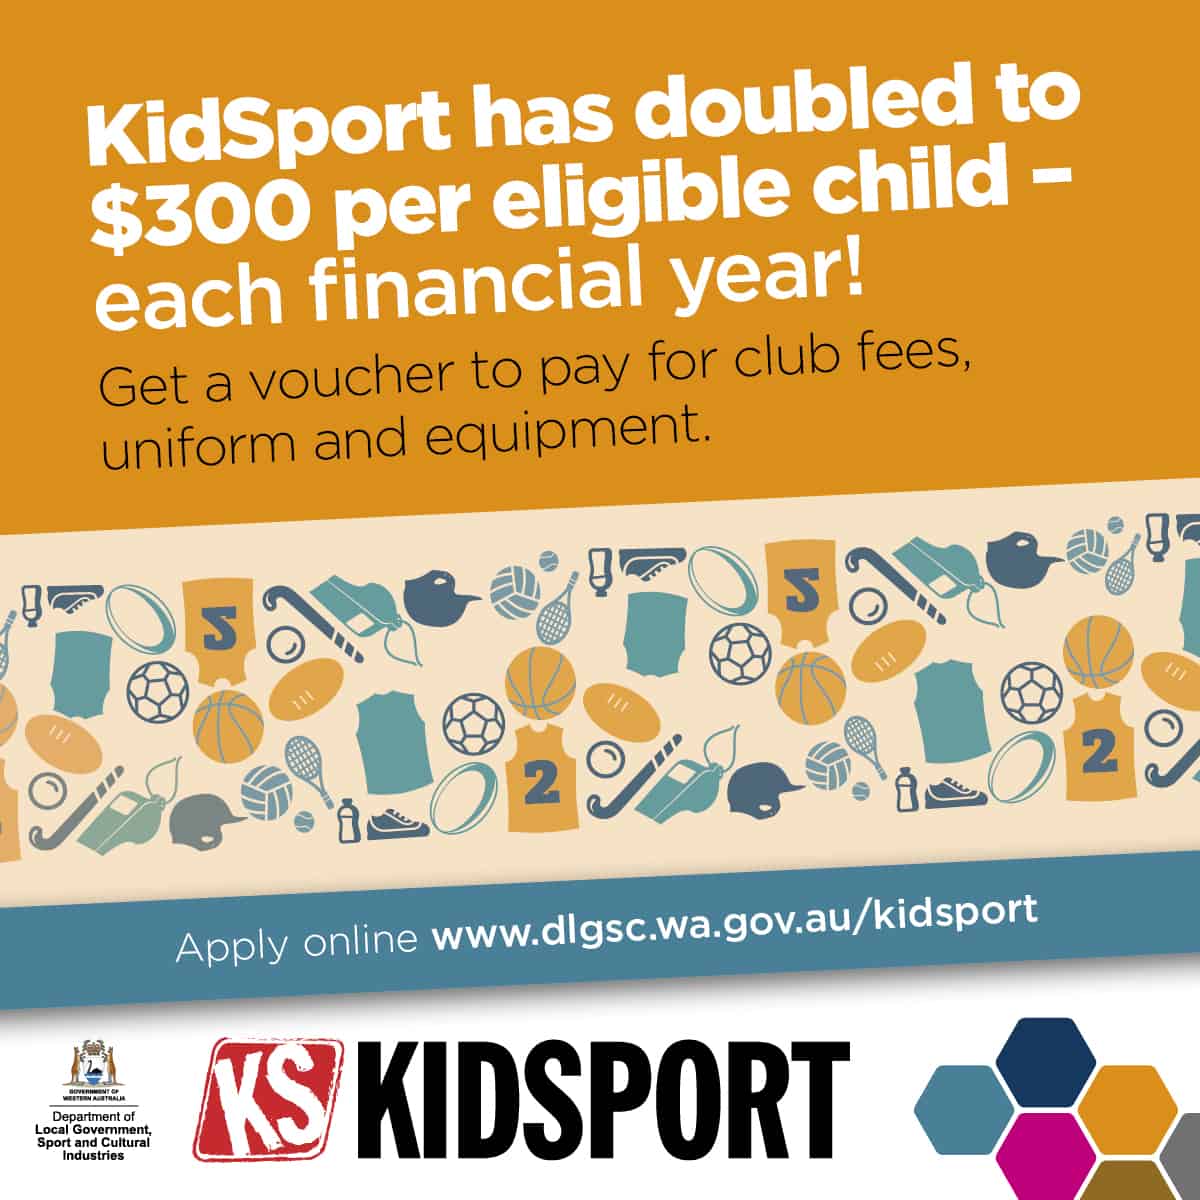 kidsport-club-fees-uniform-and-equipment-1200x-square